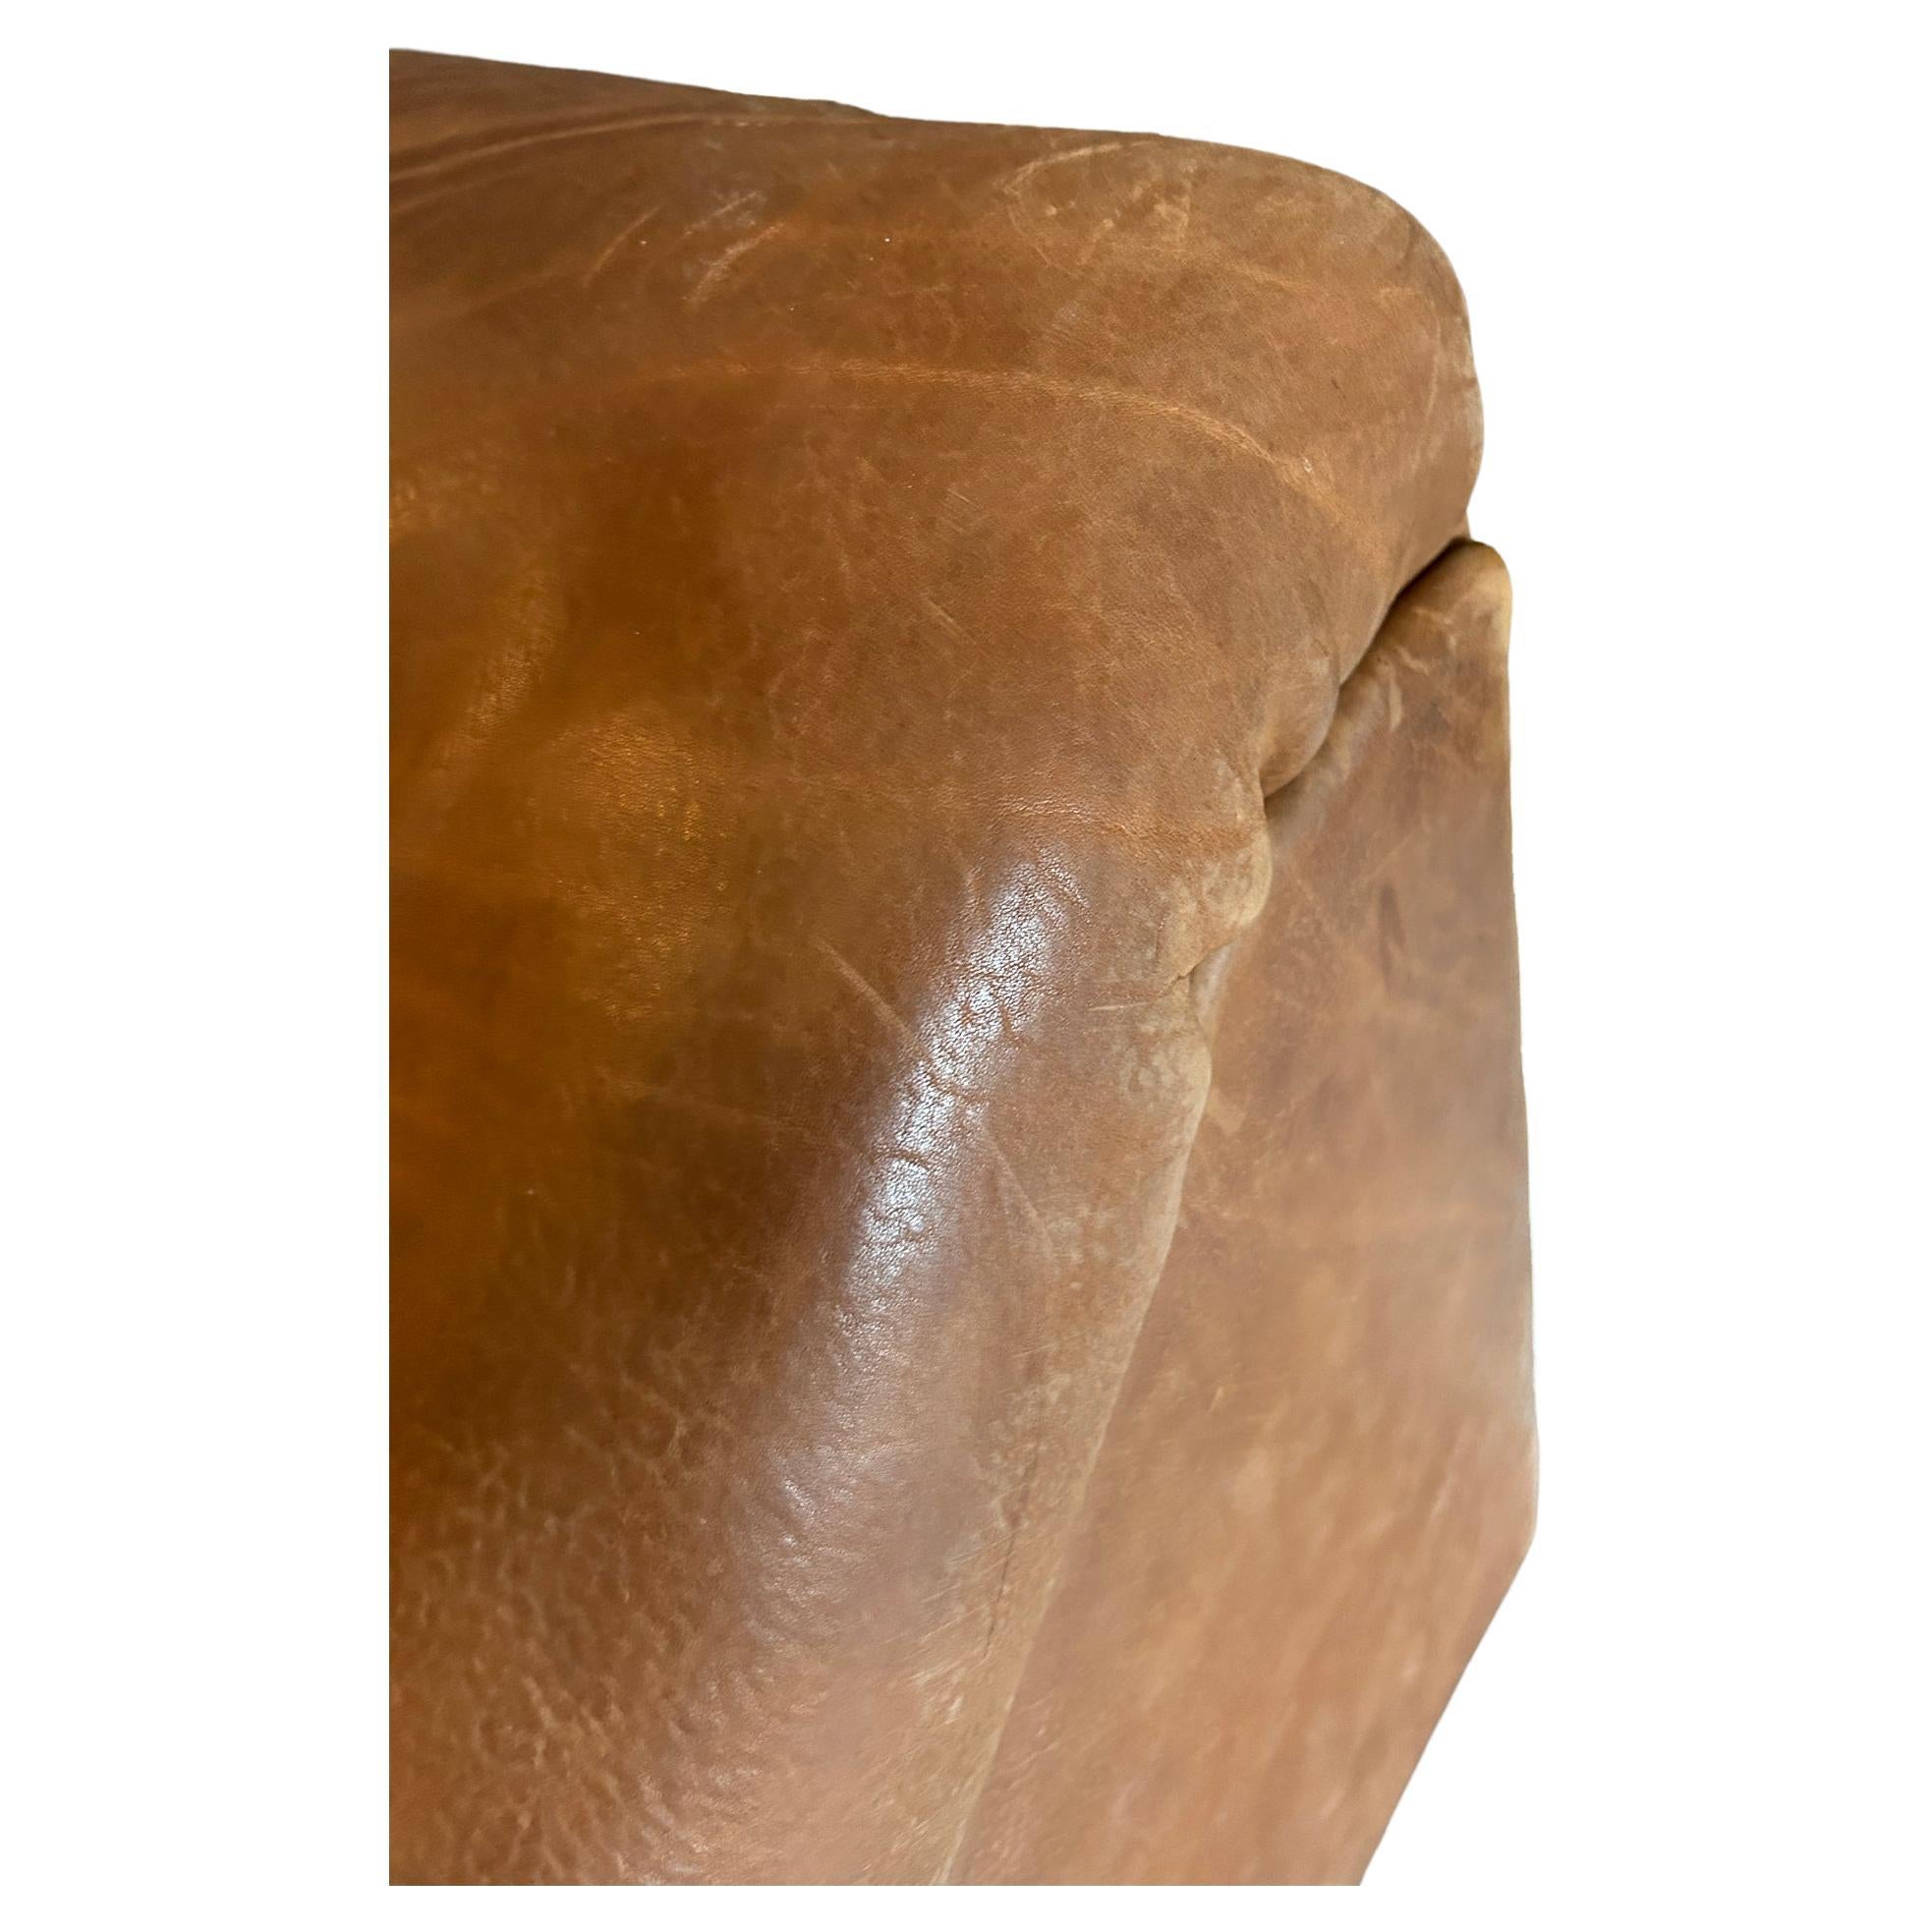 (2) Sections midcentury De Sede DS46 Sofa Loveseat Cognac Büffelleder Schweiz um 1970. Sehr hohe Qualität dickes Büffelleder. Sehr niedriger, schwerer Liegesessel (2) mit Armlehnen links und rechts. Erstaunliche skulpturale Form. Eine Menge Patina.